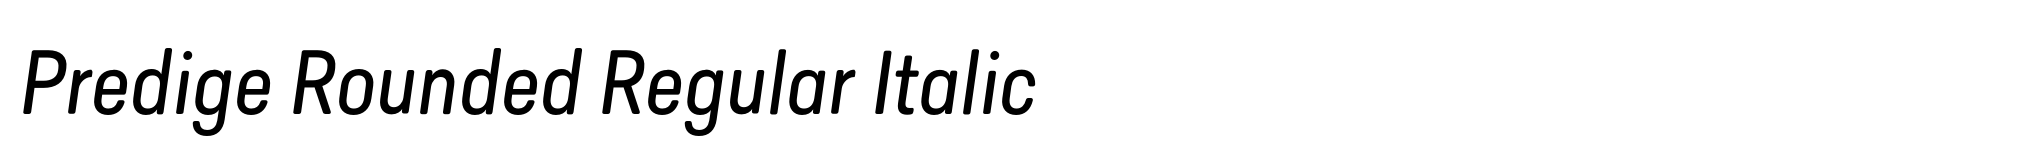 Predige Rounded Regular Italic image